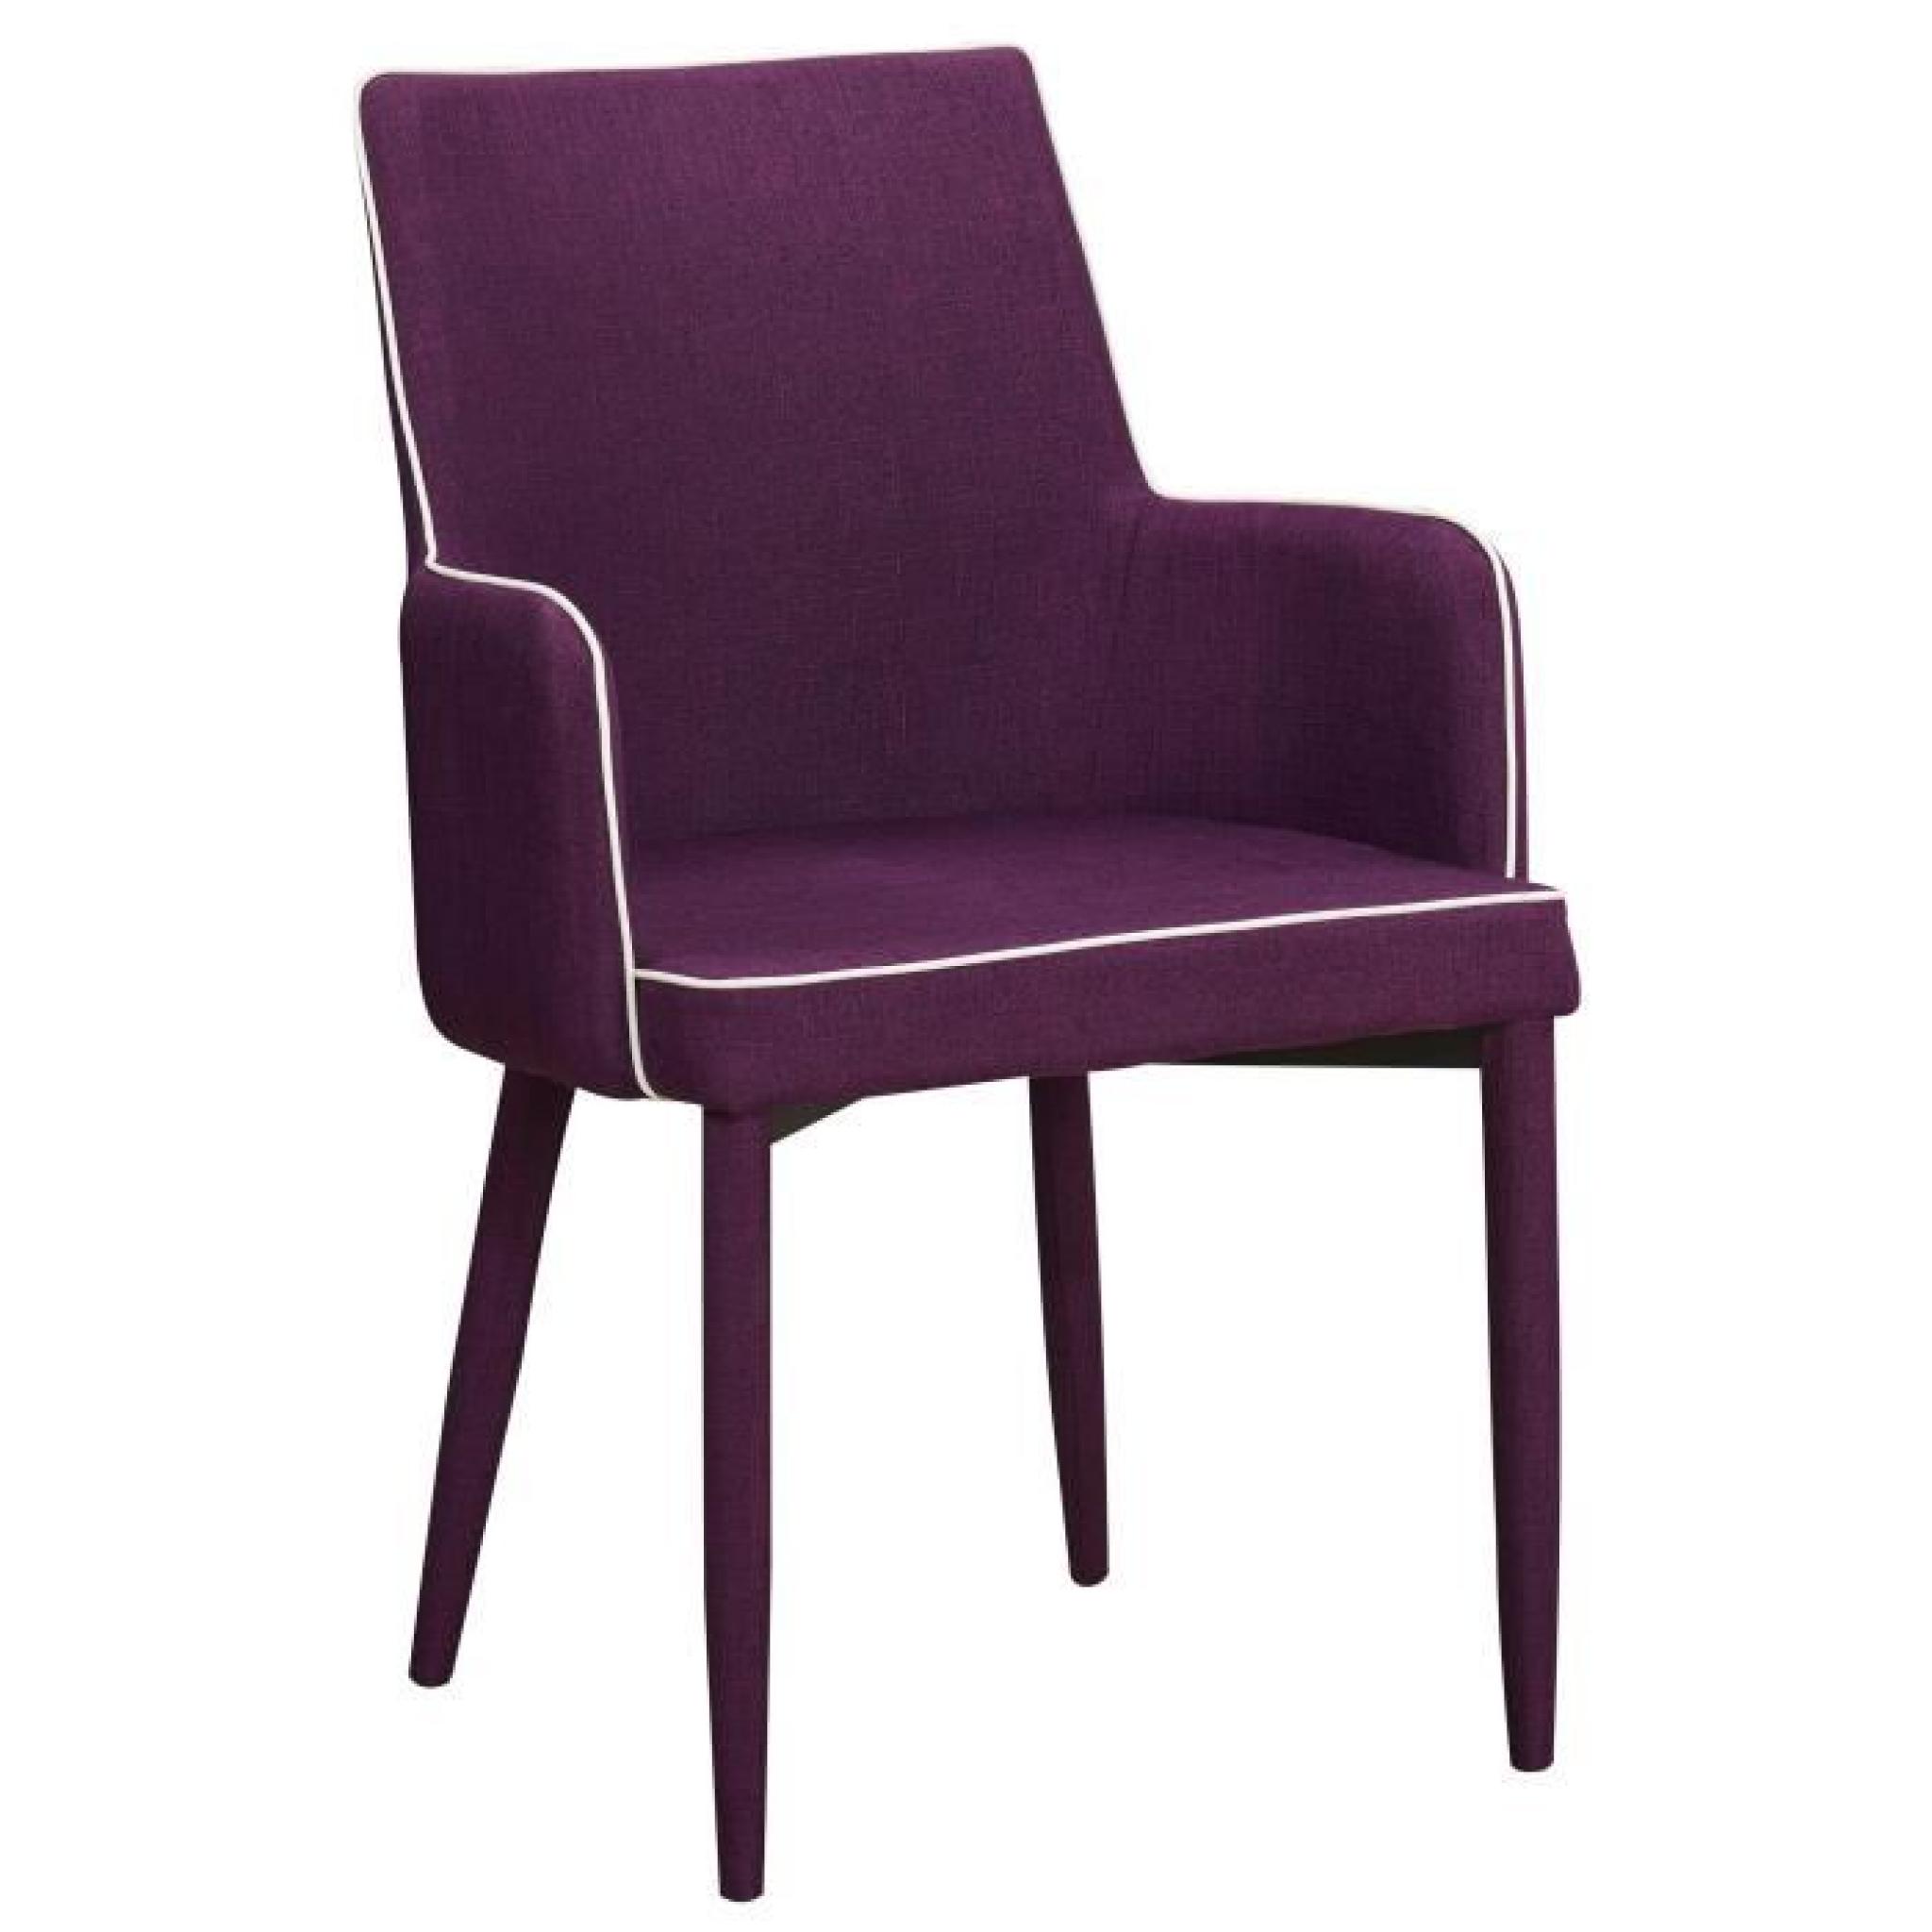 Chaise en tissus design ligne contrastée avec accoudoirs coloris rouge cinabre